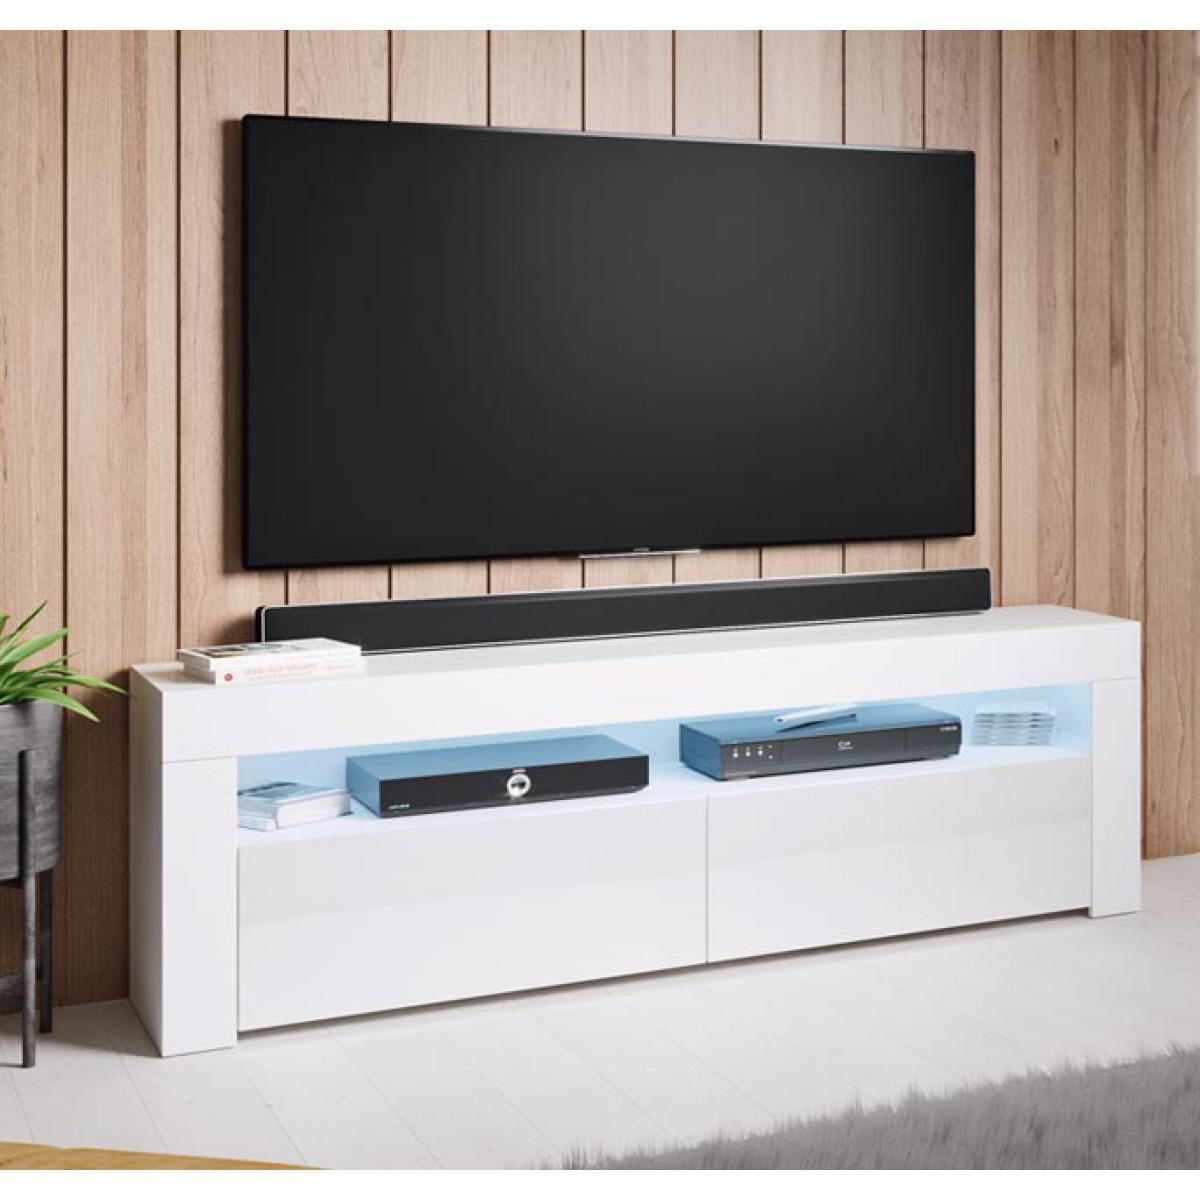 Design Ameublement - Meuble TV modèle Aker (140x50,5cm) couleur blanc - Meubles TV, Hi-Fi